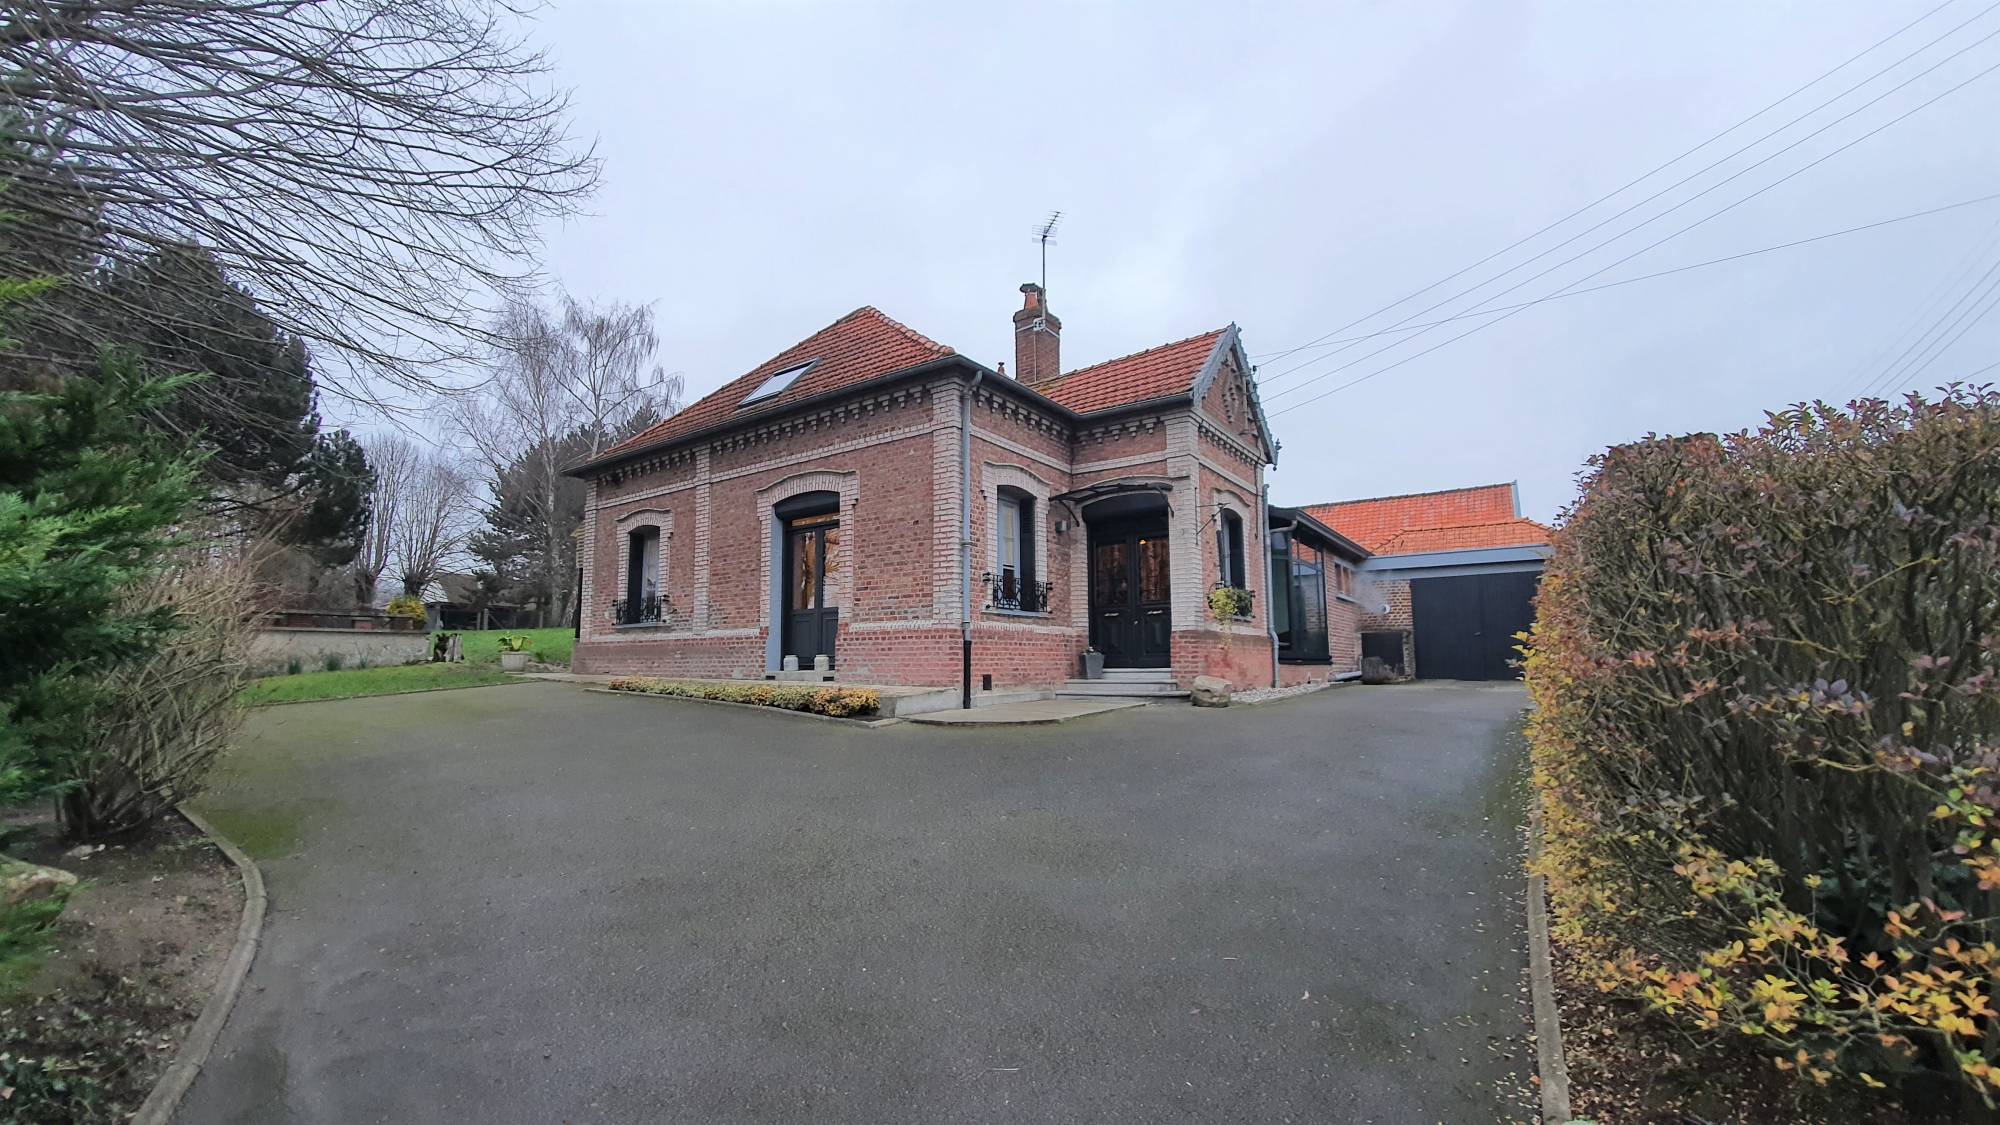 A vendre charmante maison en briques, 3 chambres, garage, à 15 minutes de la Baie de Somme et de Saint-Valery-sur-Somme 80230